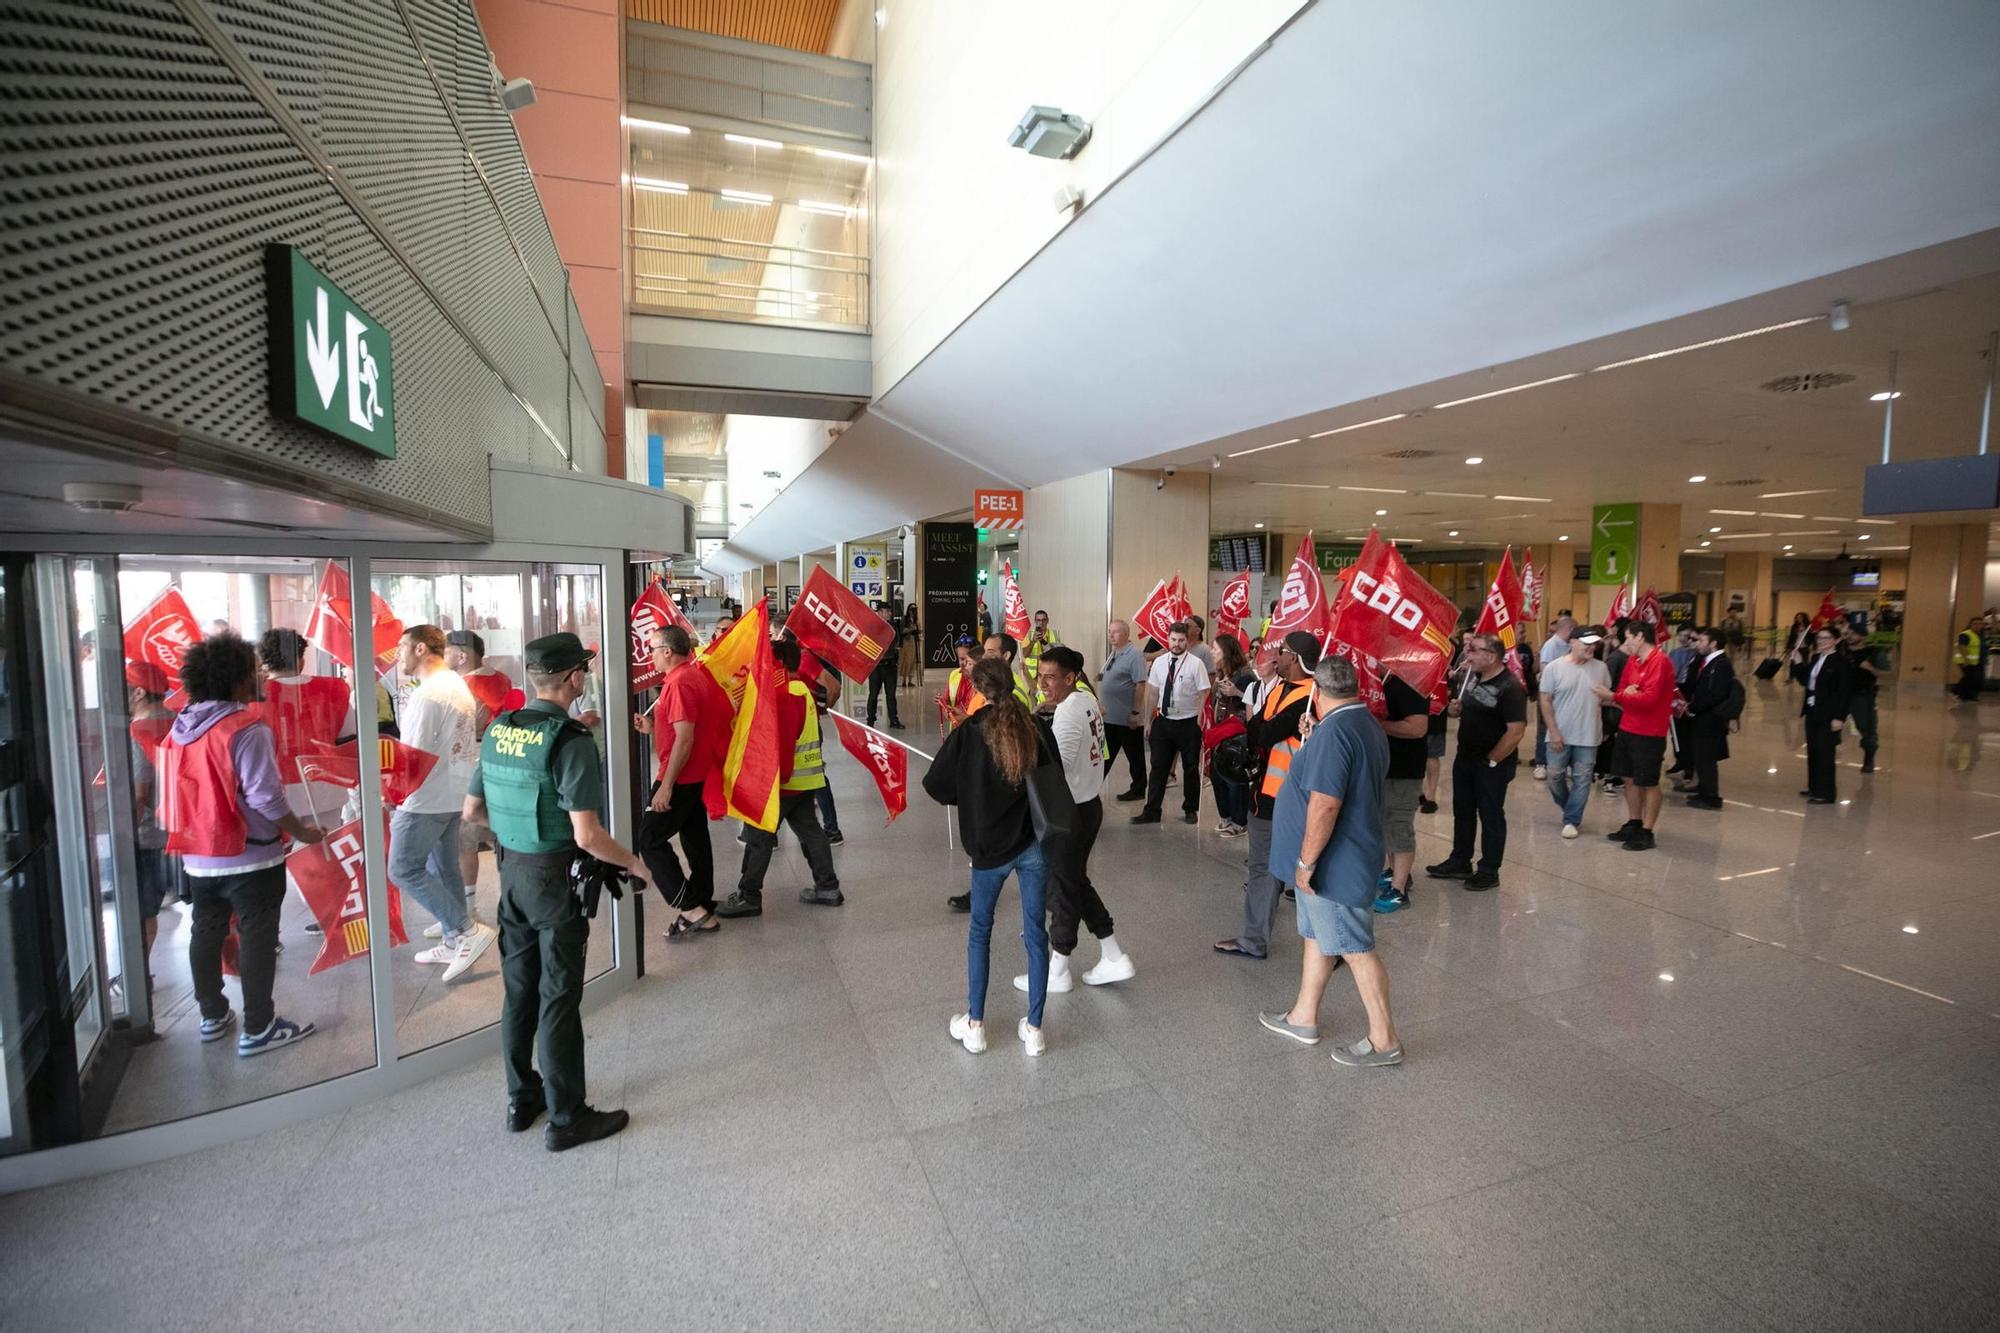 Descubre las mejores fotos de la concentración de trabajadores de Iberia en el aeropuerto de Ibiza